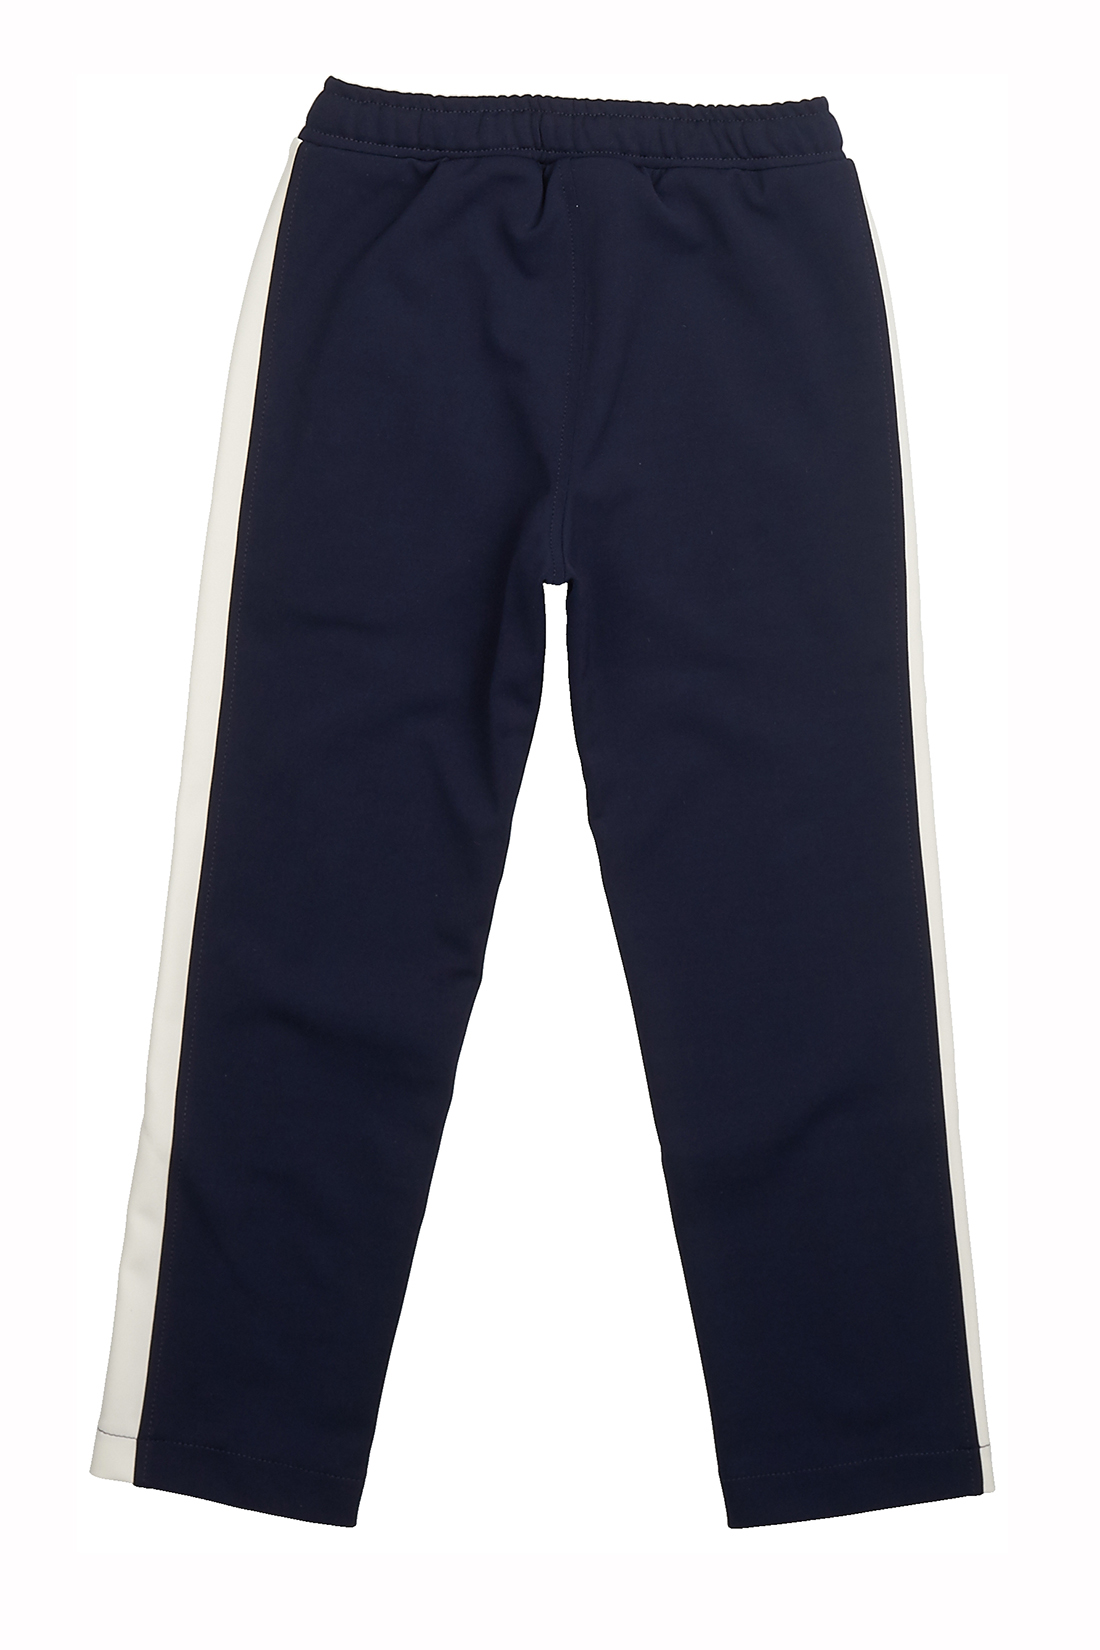 Трикотажные брюки для мальчика (арт. baon BK798004), размер 122-128, цвет синий Трикотажные брюки для мальчика (арт. baon BK798004) - фото 2